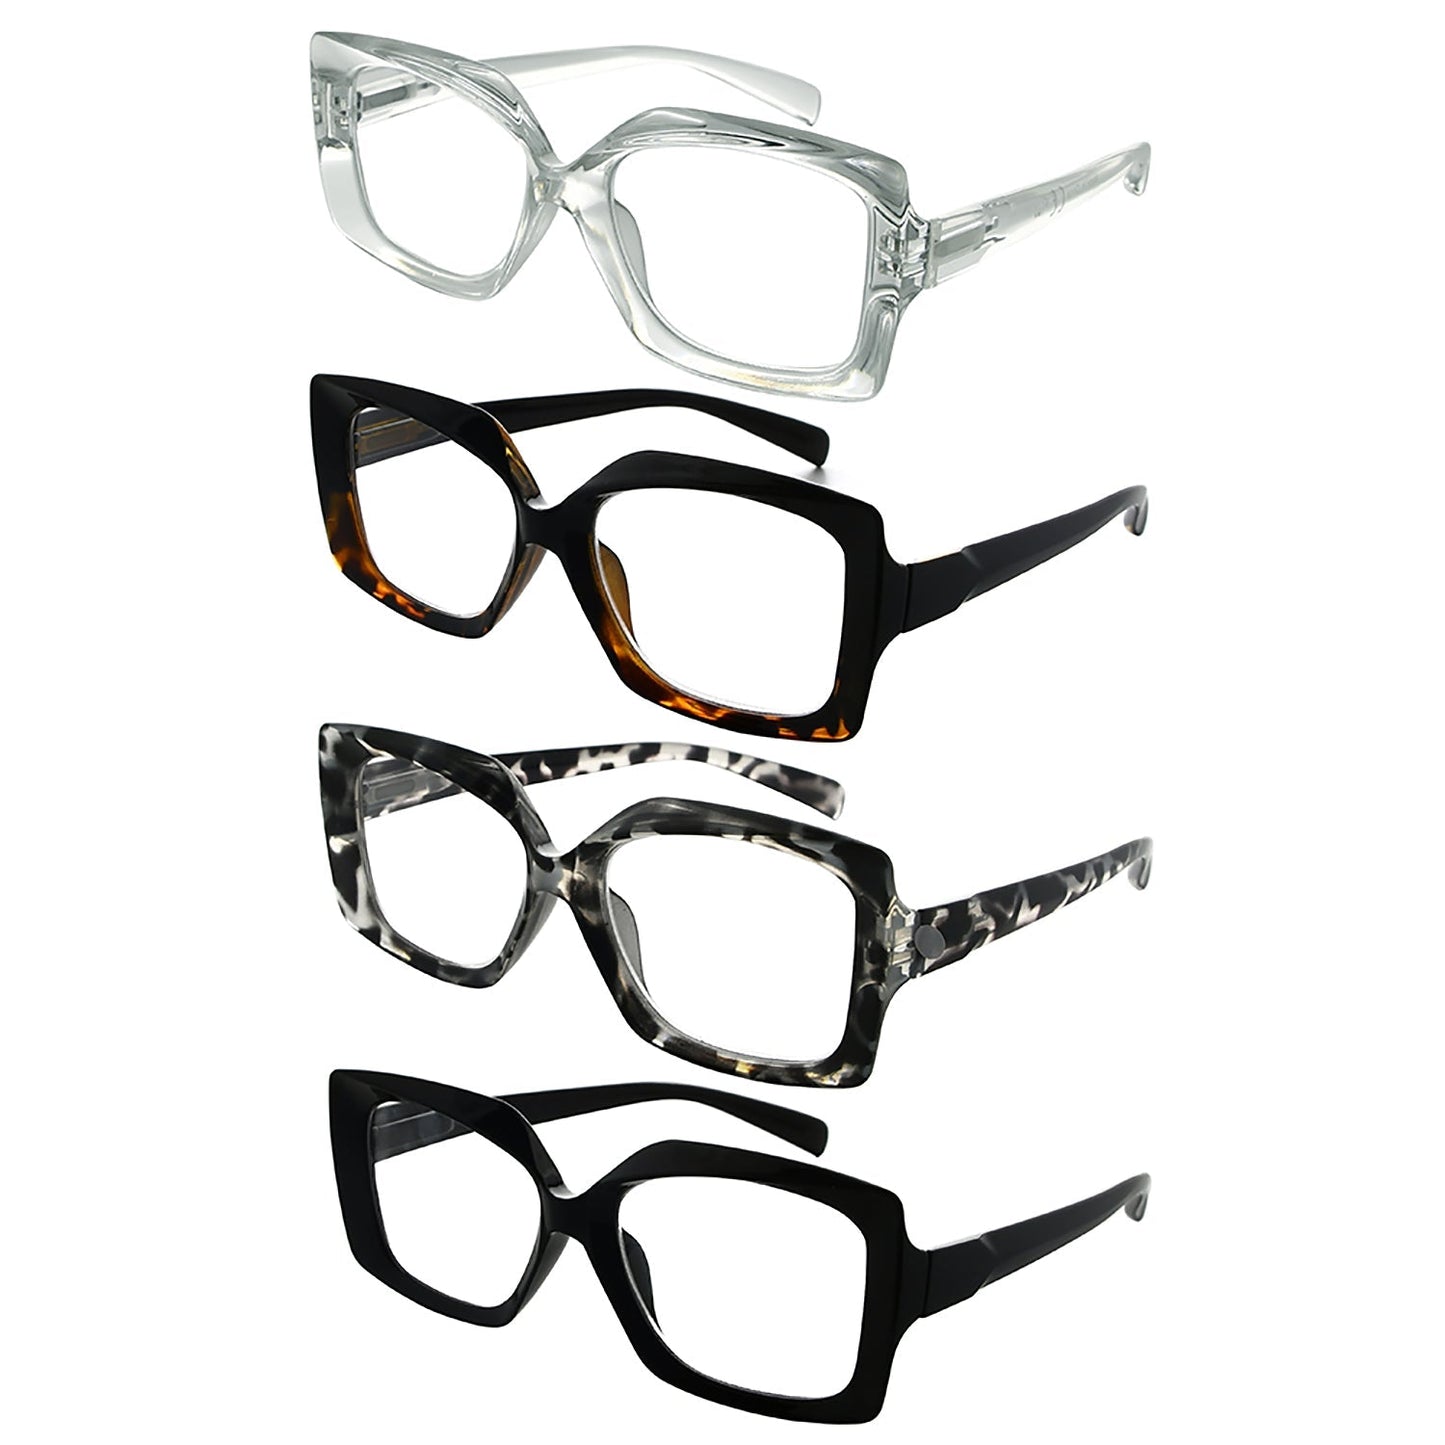 4 Pack Oversized Design Reading Glasses for Women R2010